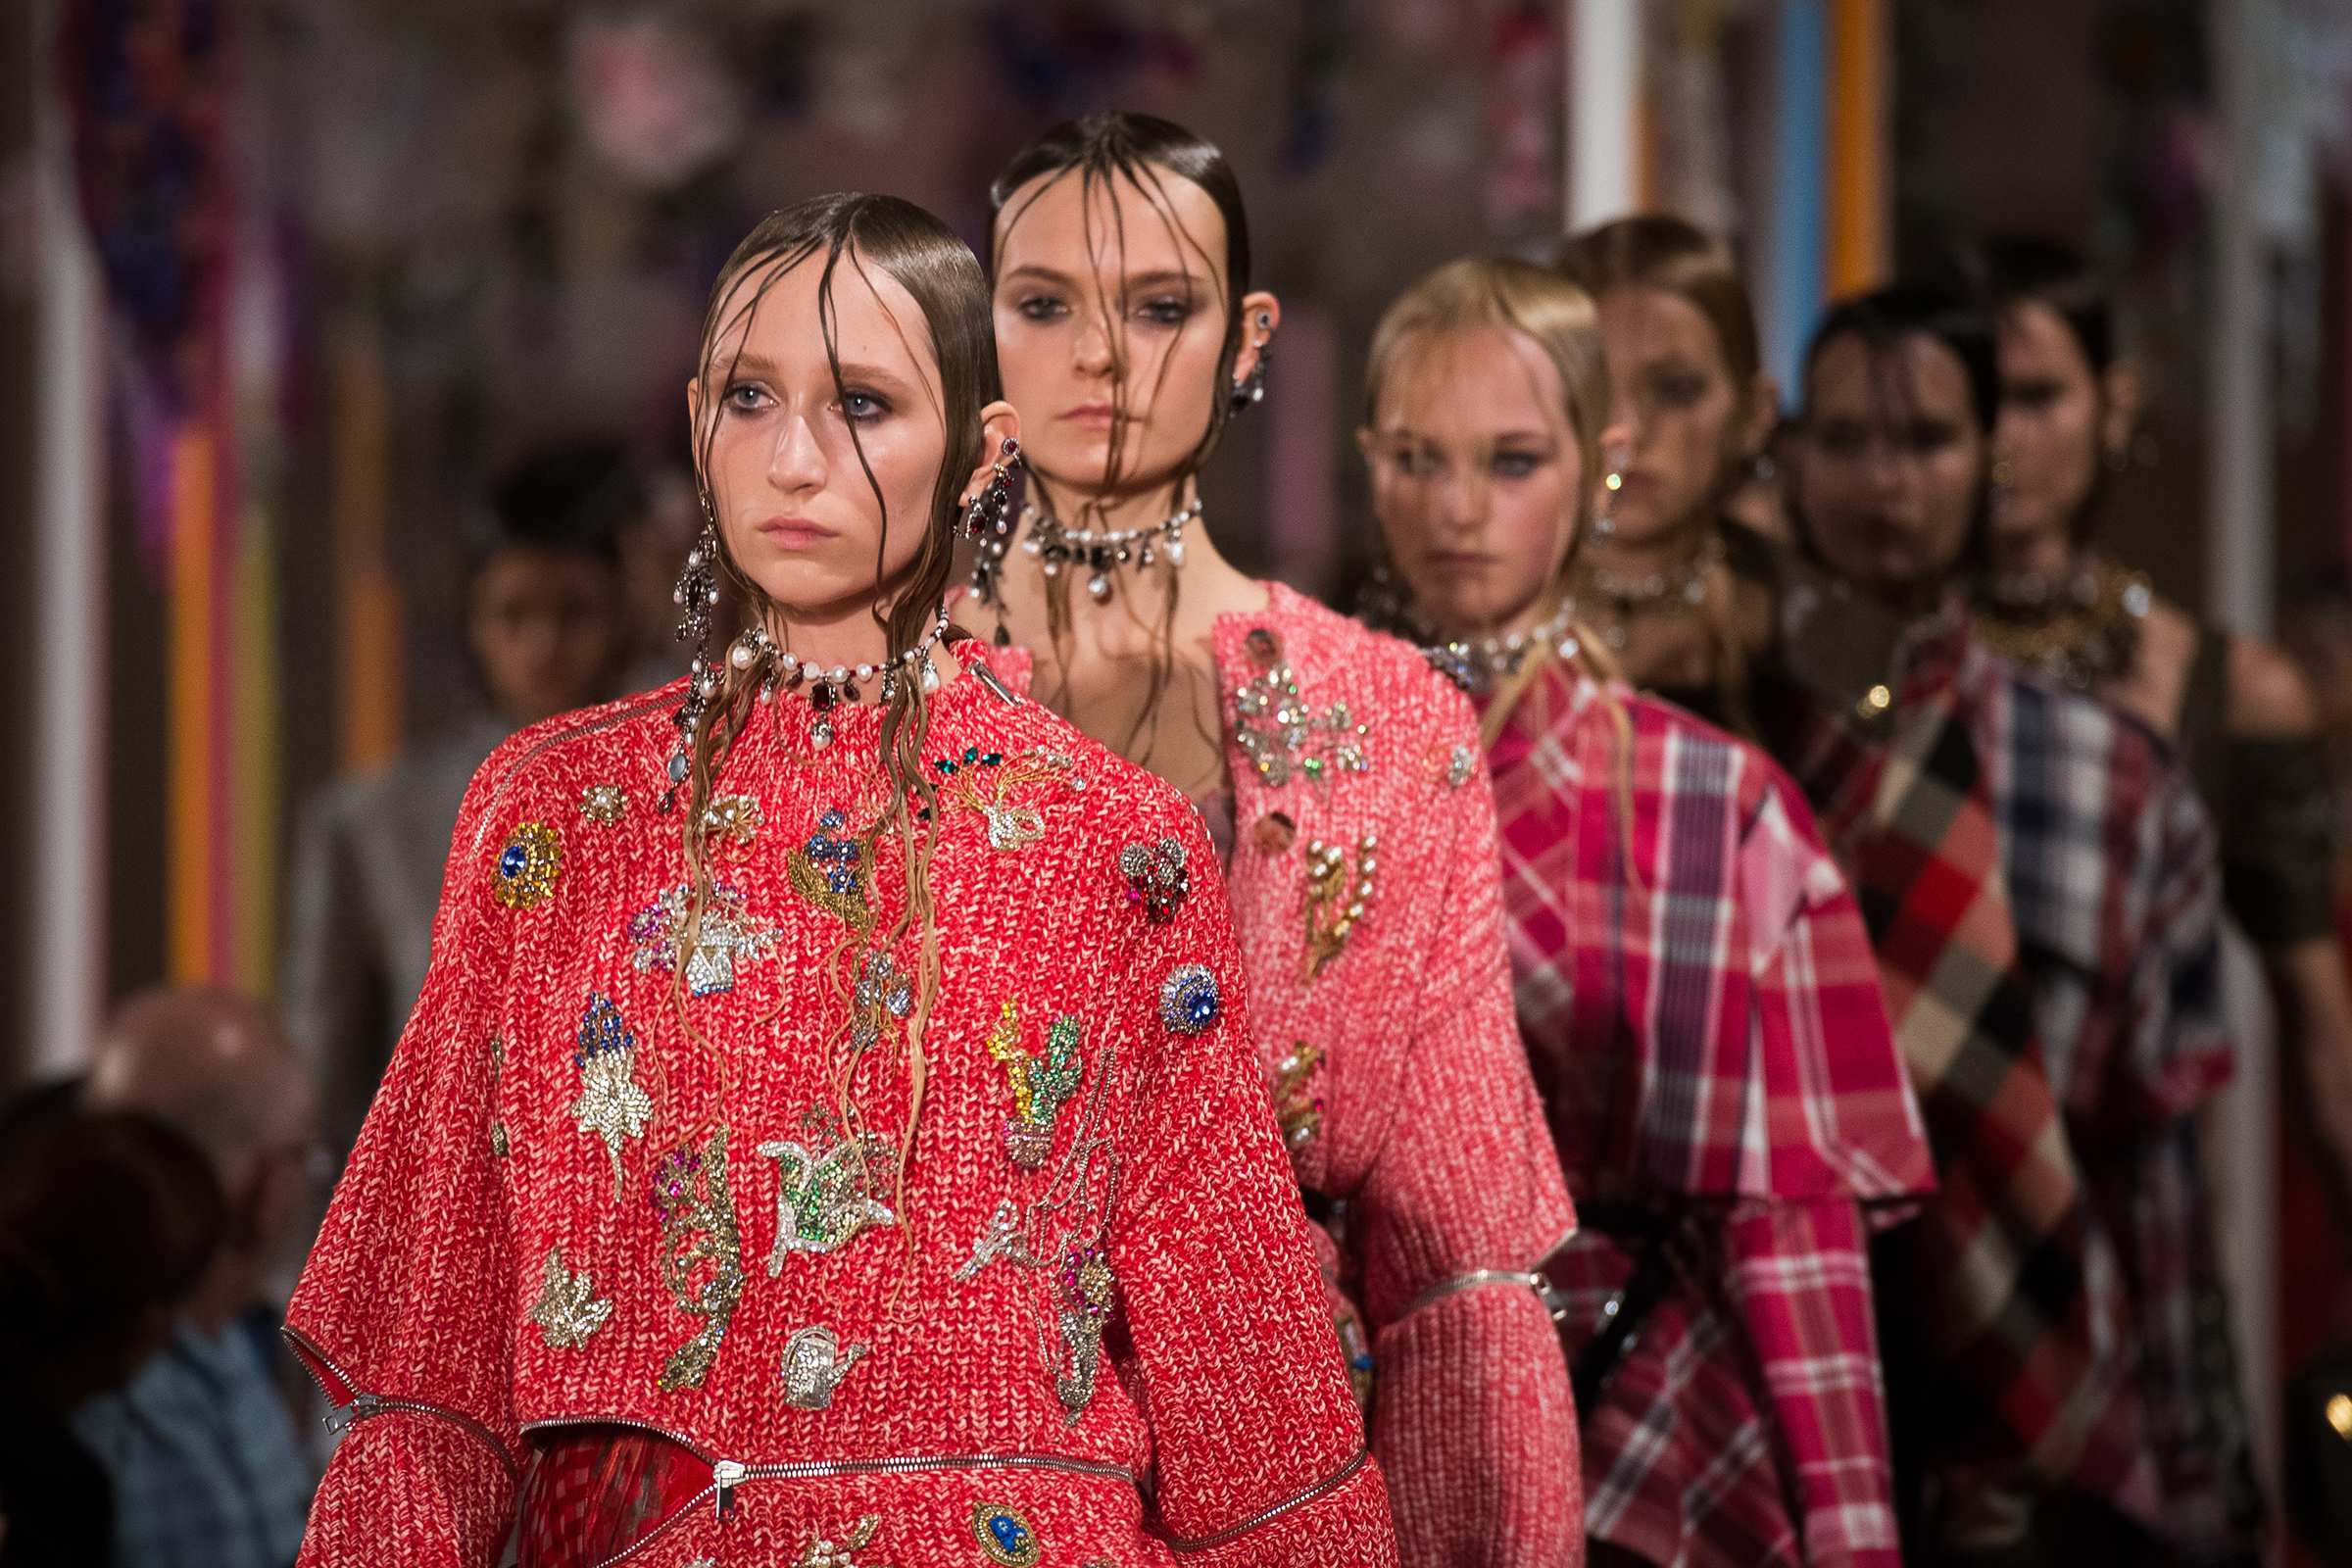 Louis Vuitton S/S 17 menswear #22 - Tagwalk: The Fashion Search Engine